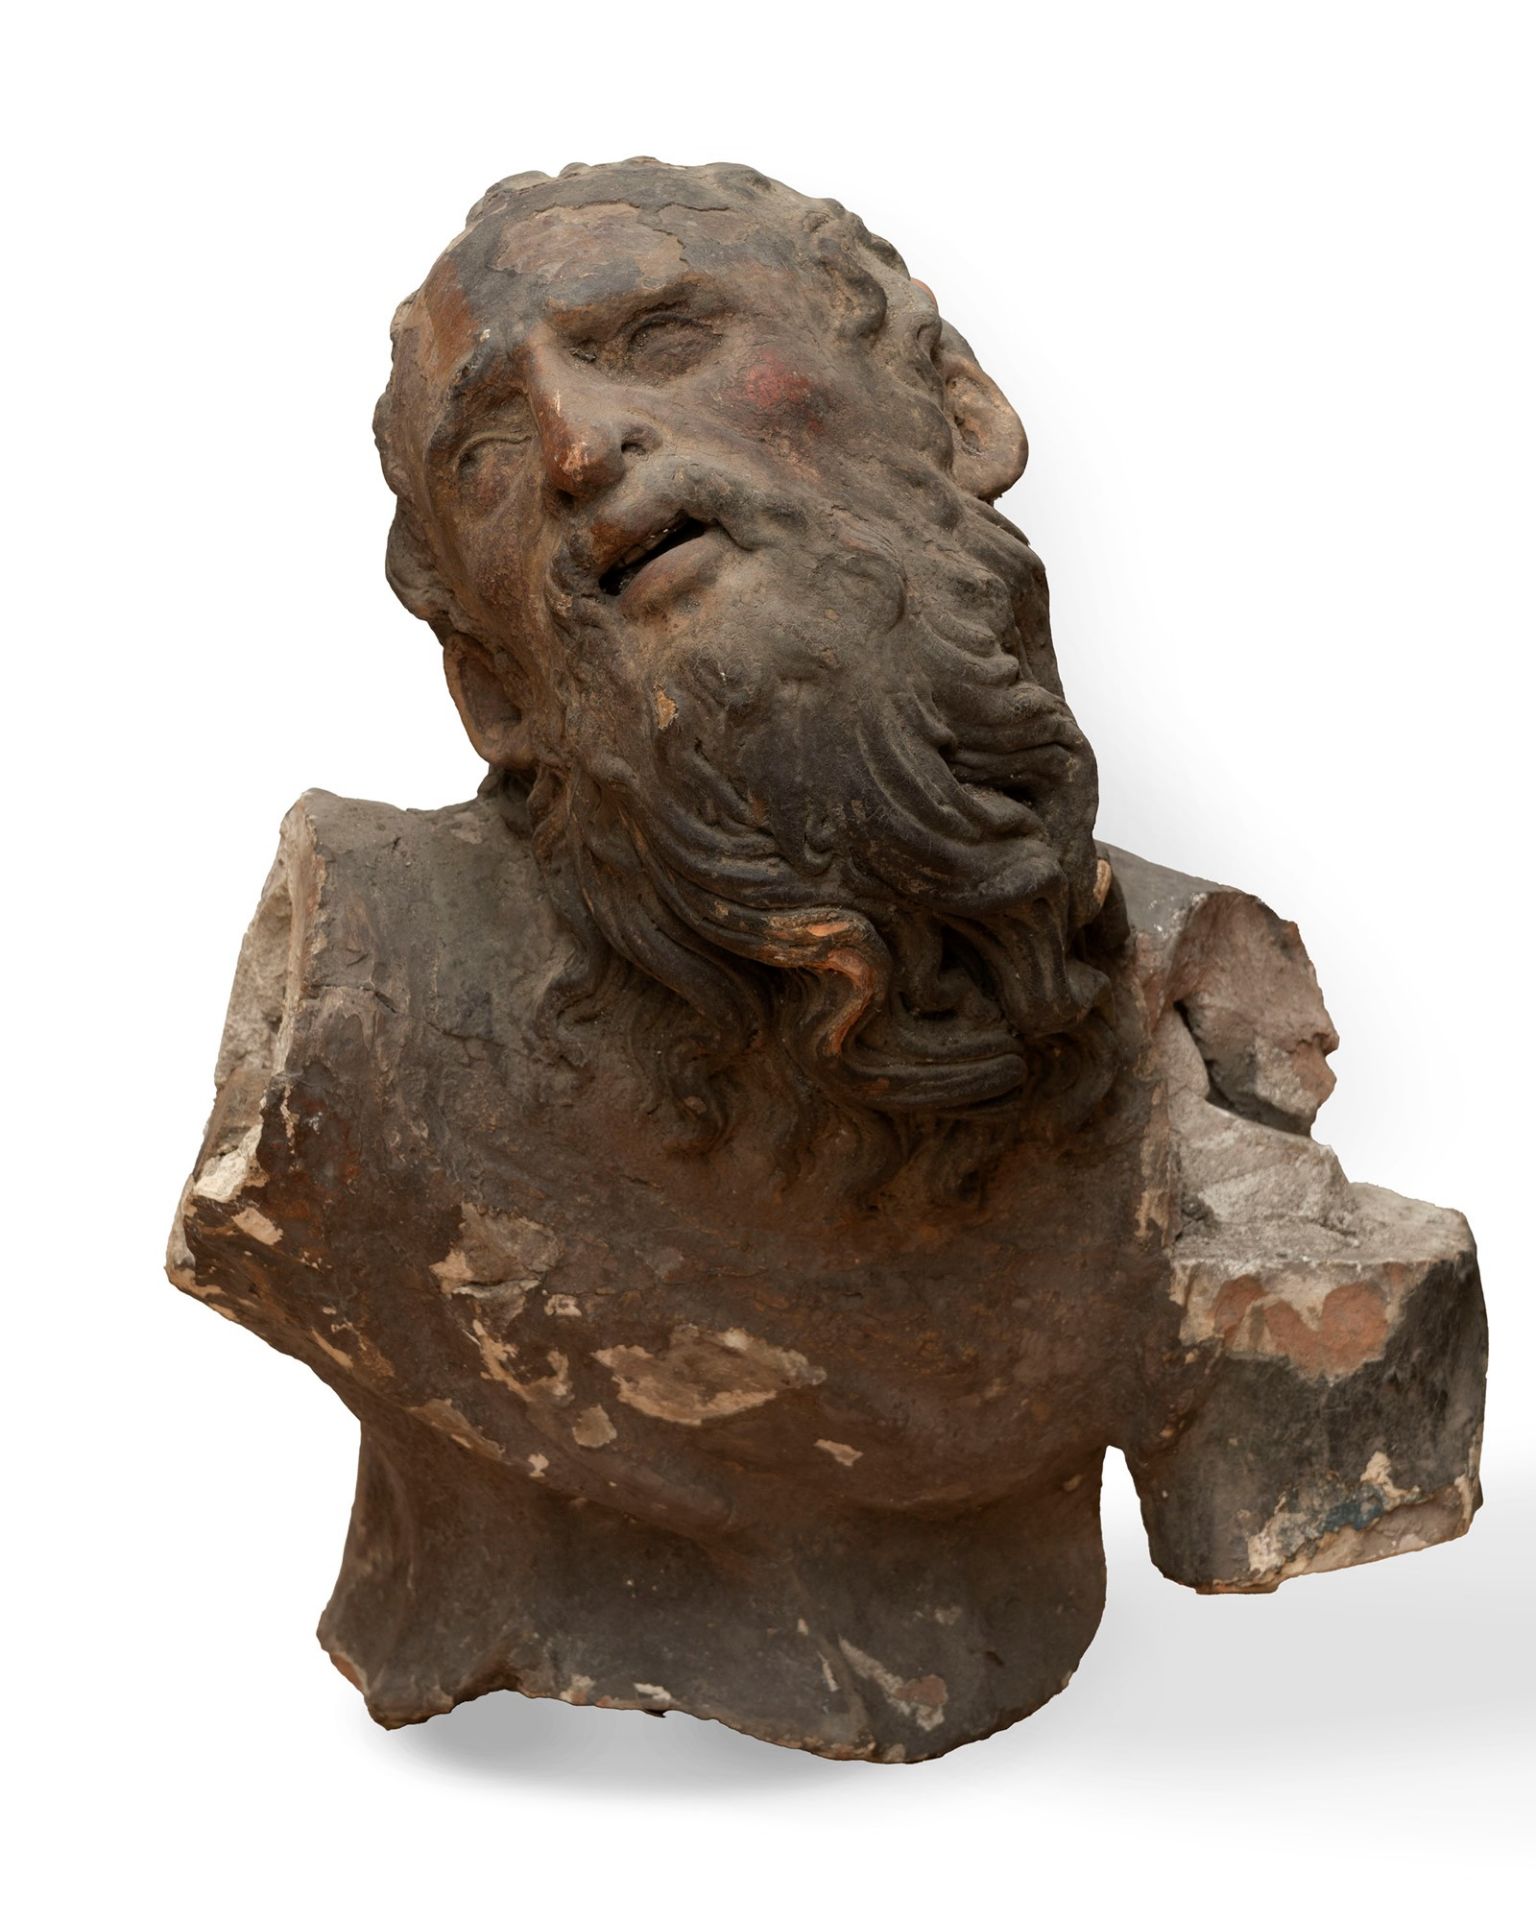 Polychrome terracotta head representing a saint, 16th-17th centuries